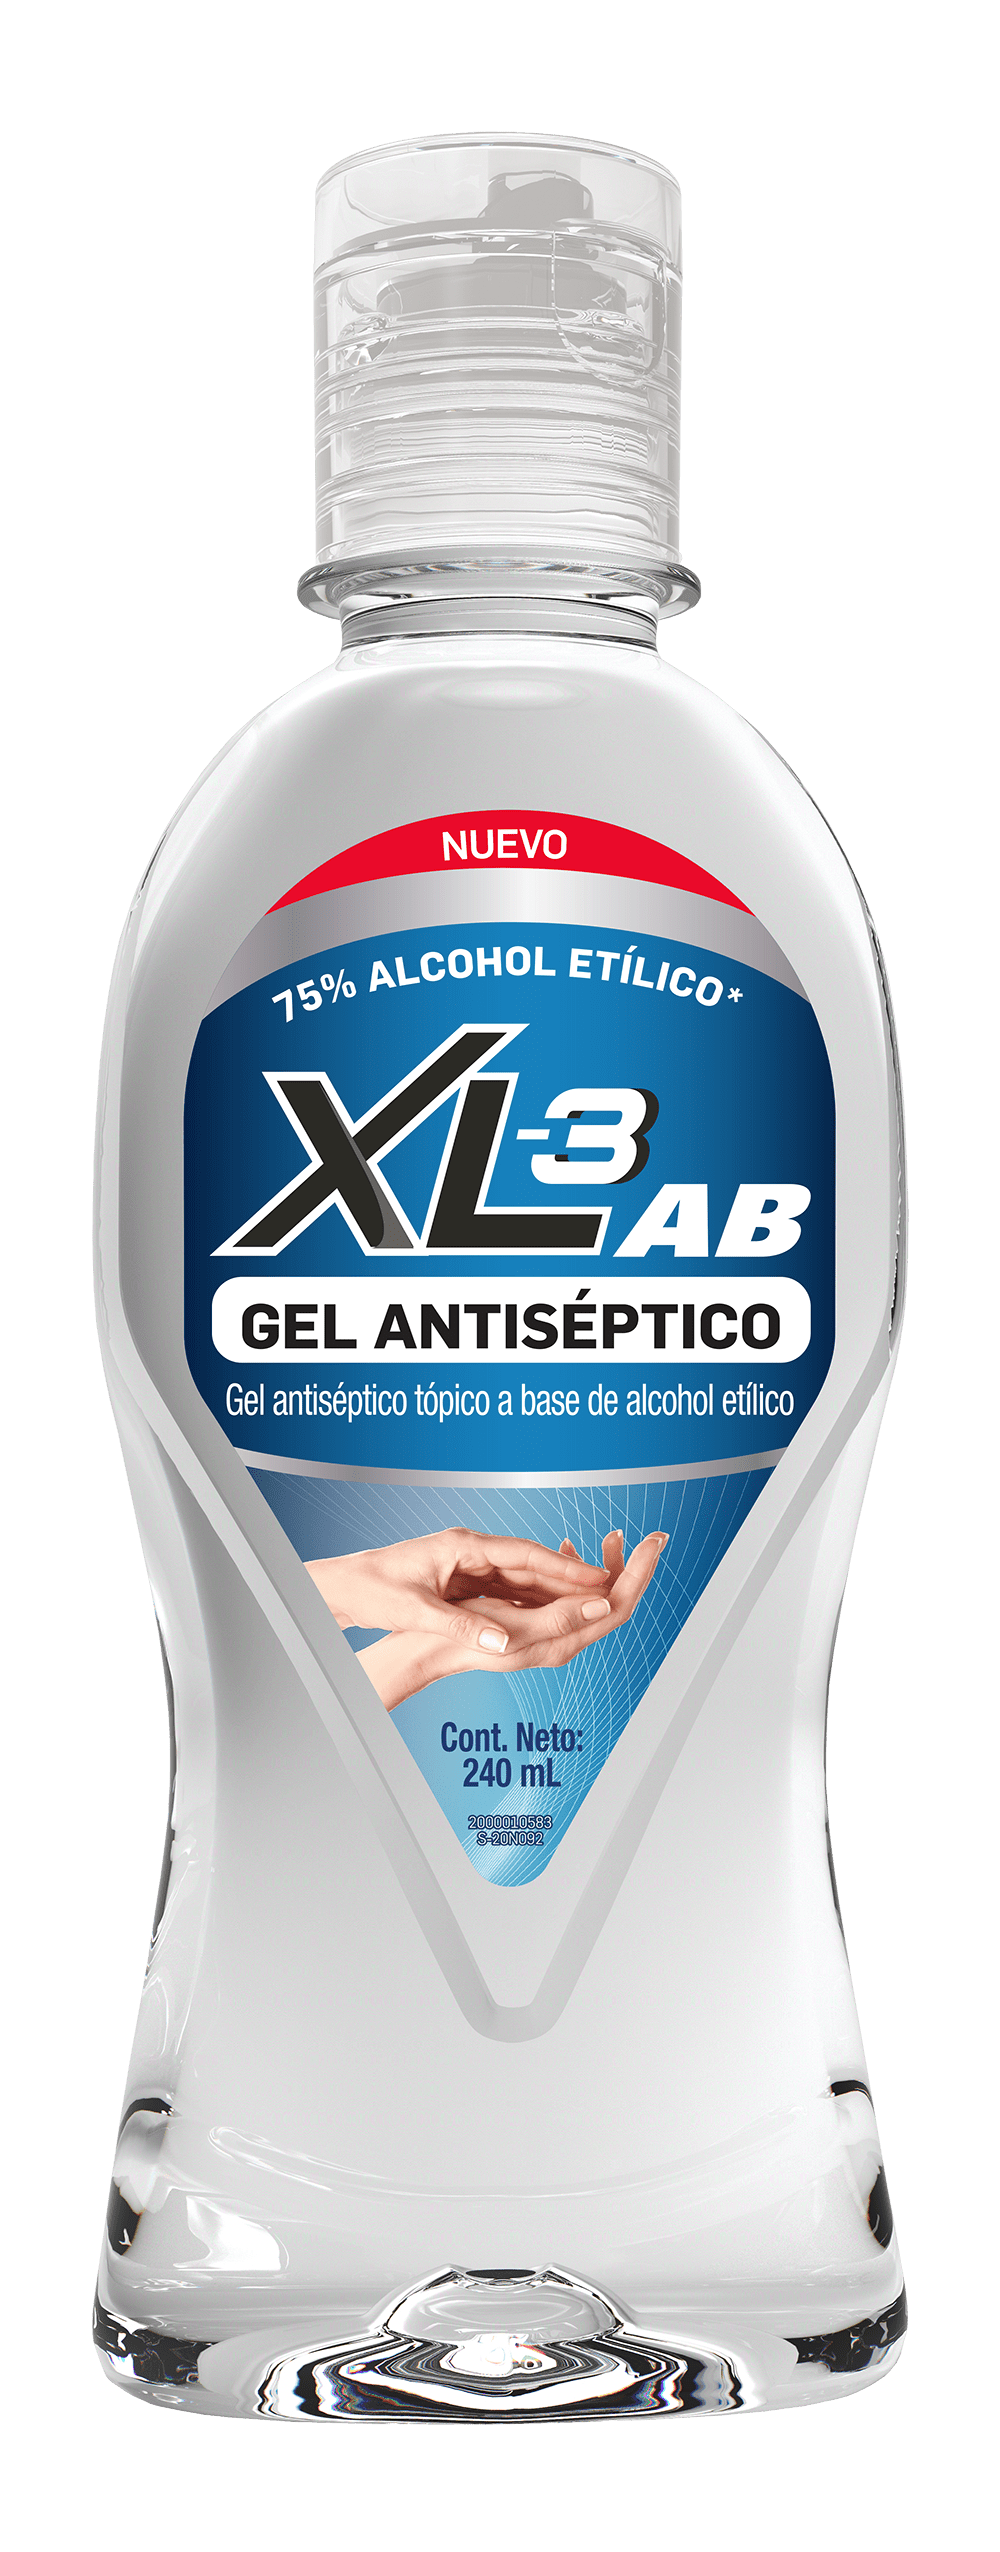 XL3 Antibacterial